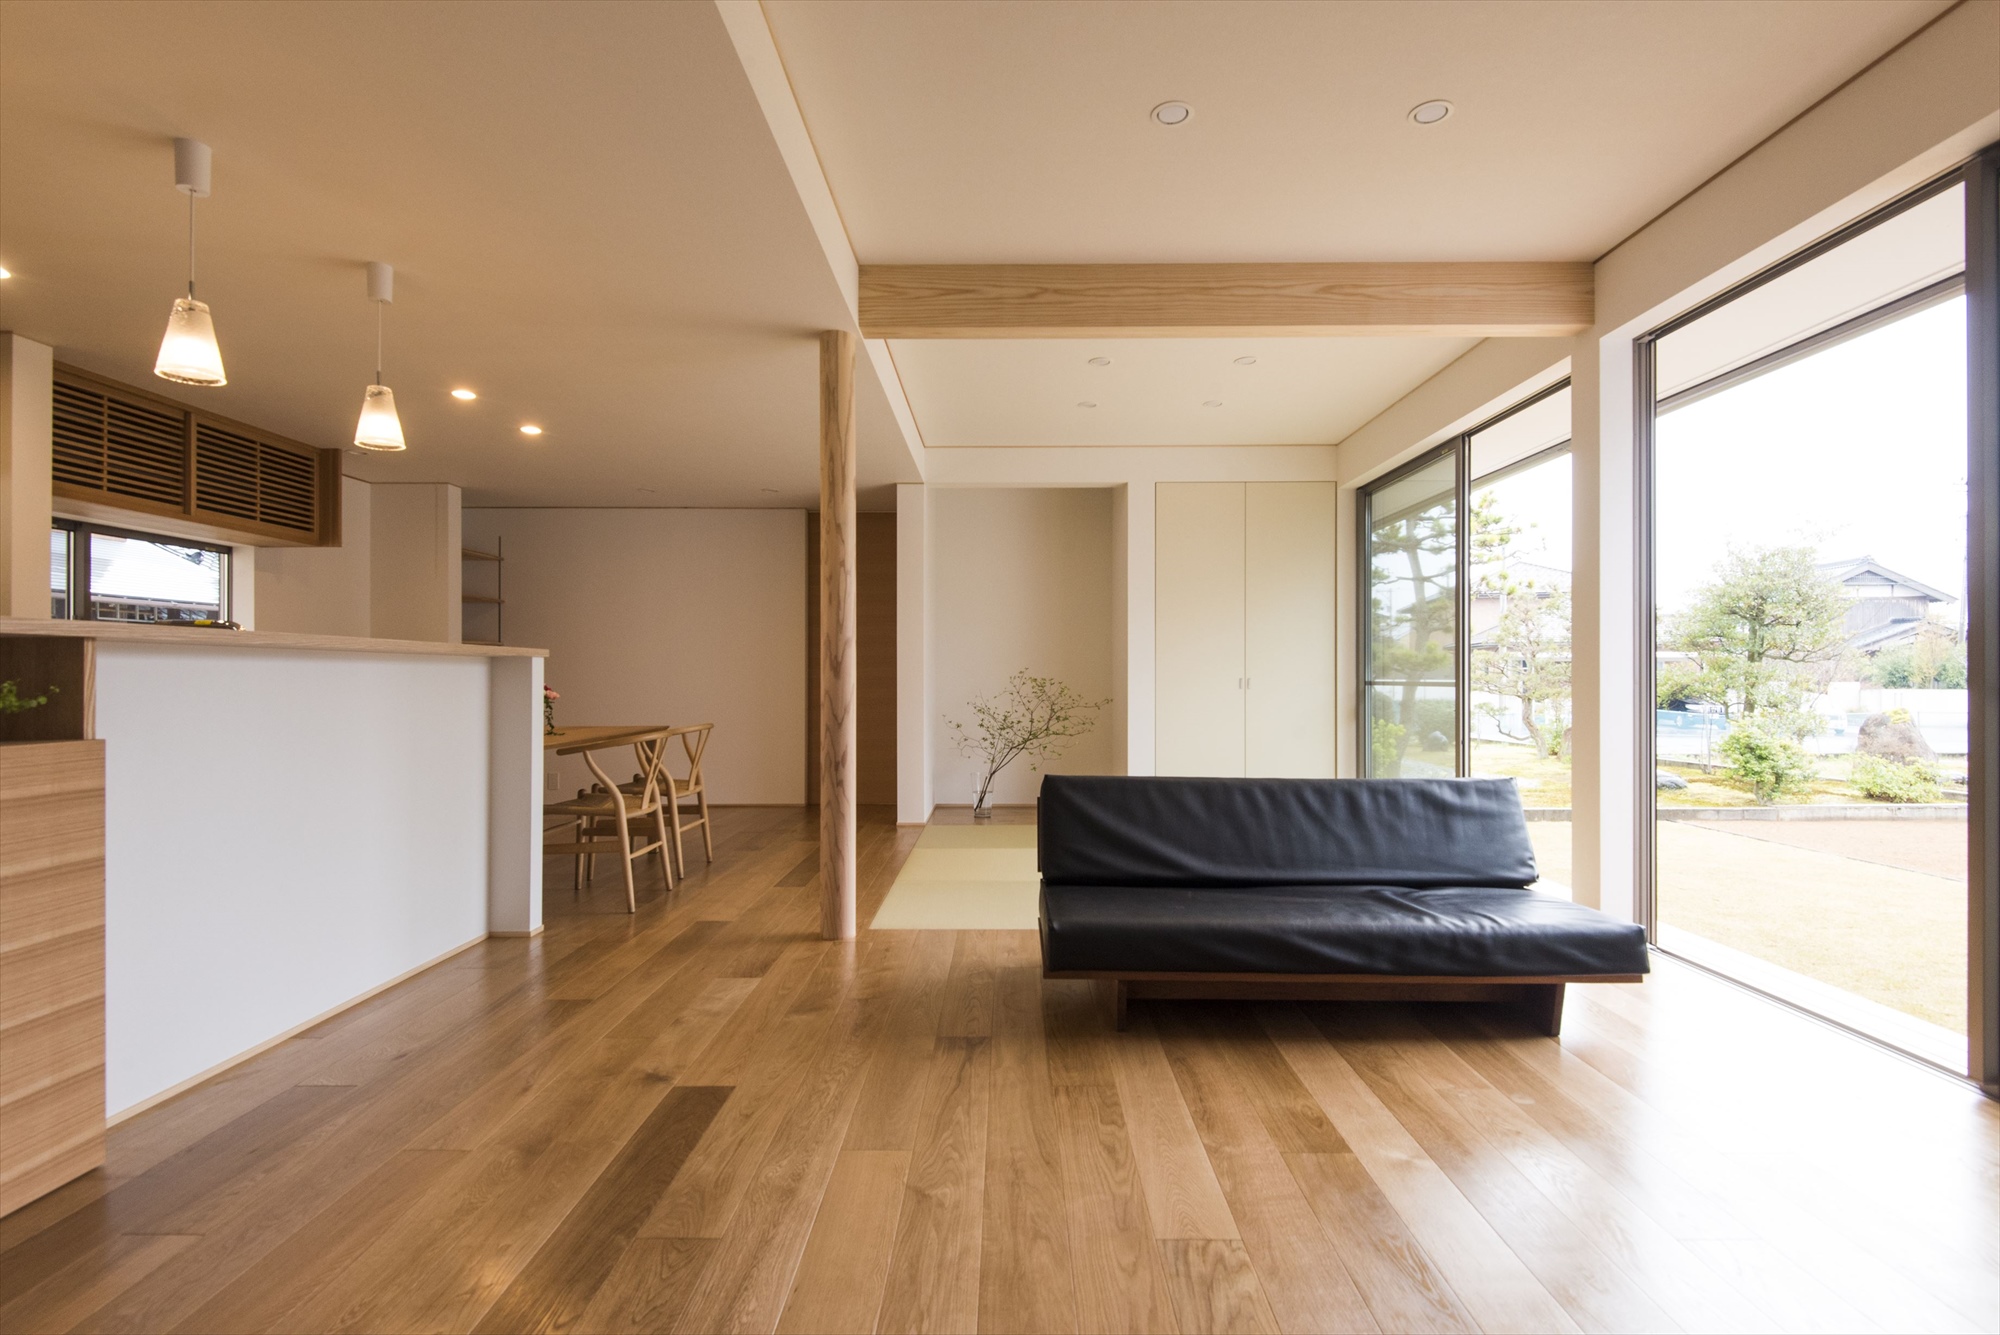 27帖のゆったりとした広さのLDK。室内の家具は、タモ材で統一した造作。